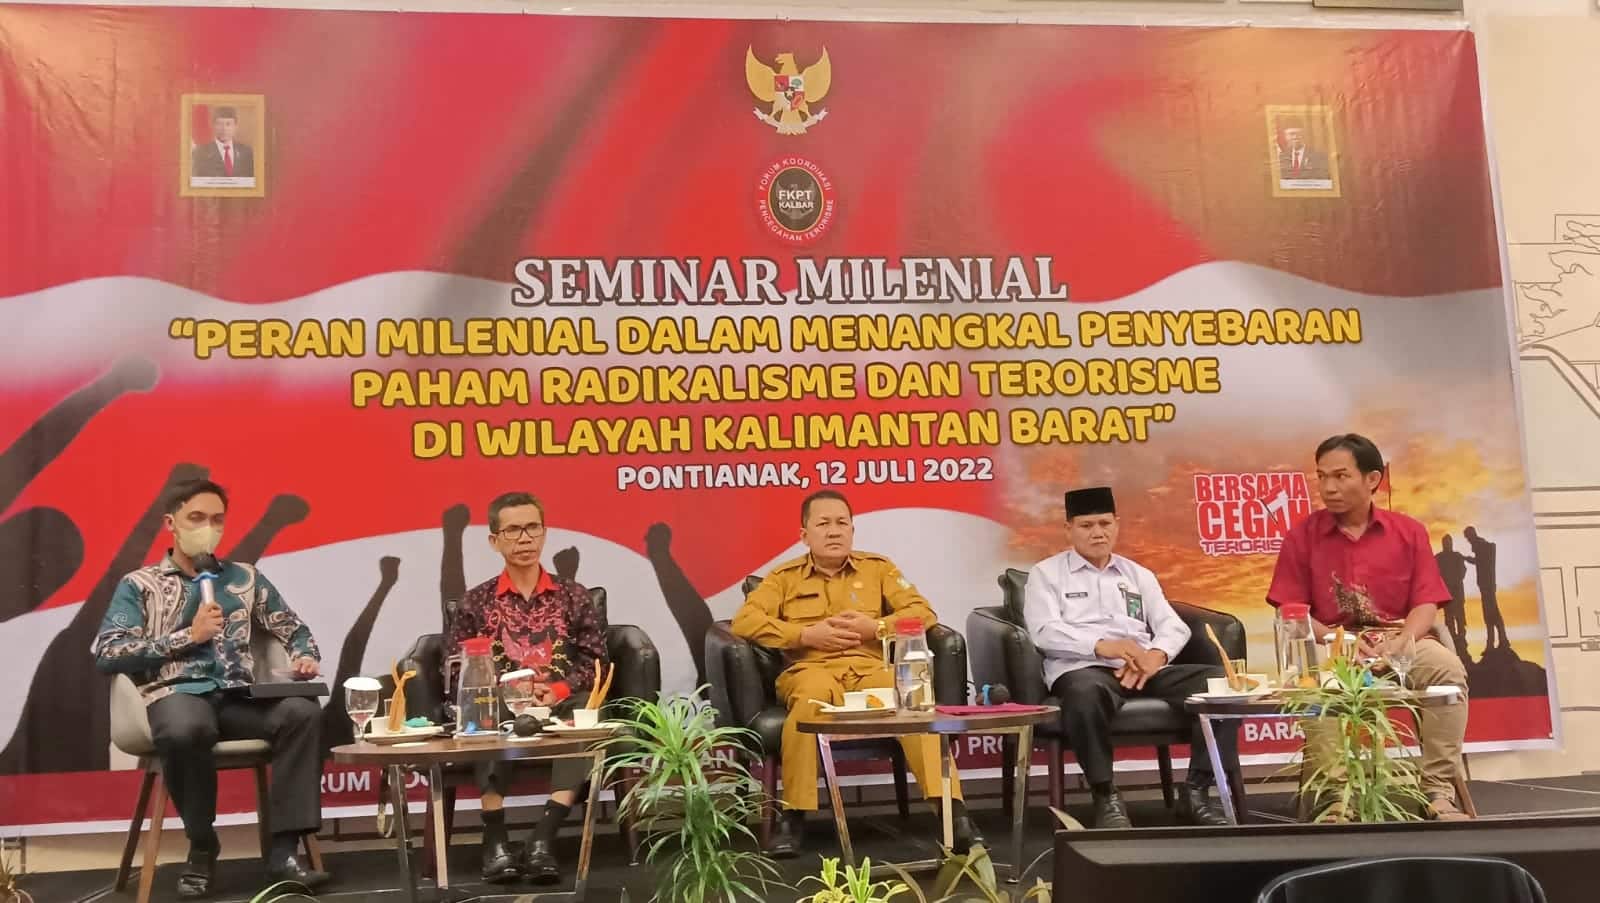 Seminar "Peran Milenial dalam Menangkal Penyebaran Radikalisme dan Terorisme di Kalimantan Barat" ini digelar di Hotel Ibis Pontianak, Selasa (12/07/2022) pagi. (Foto: Istimewa)